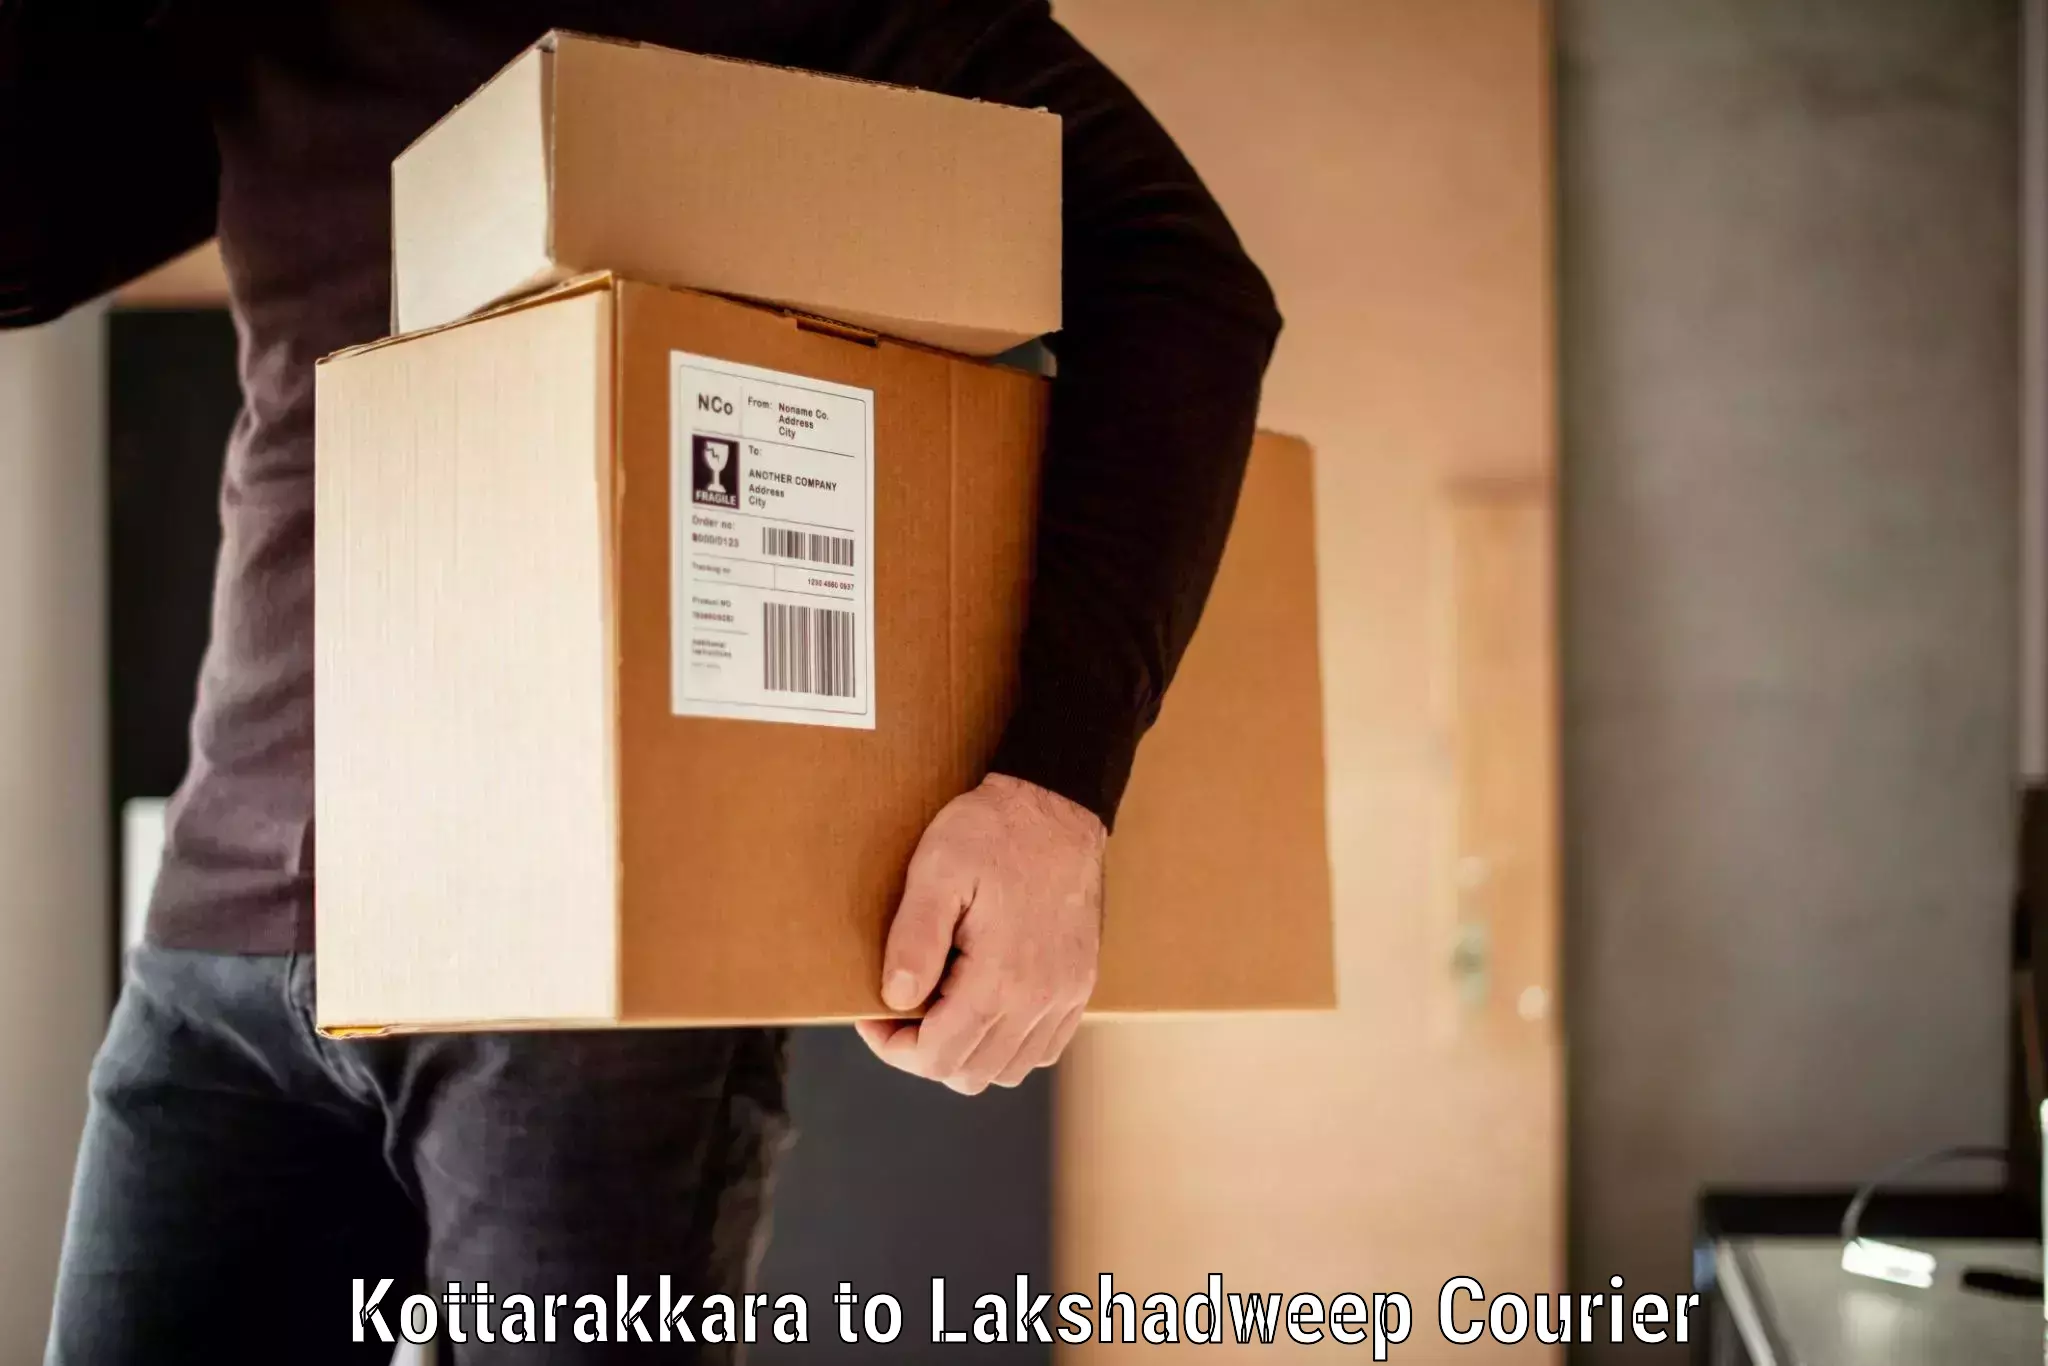 Luggage transit service Kottarakkara to Lakshadweep